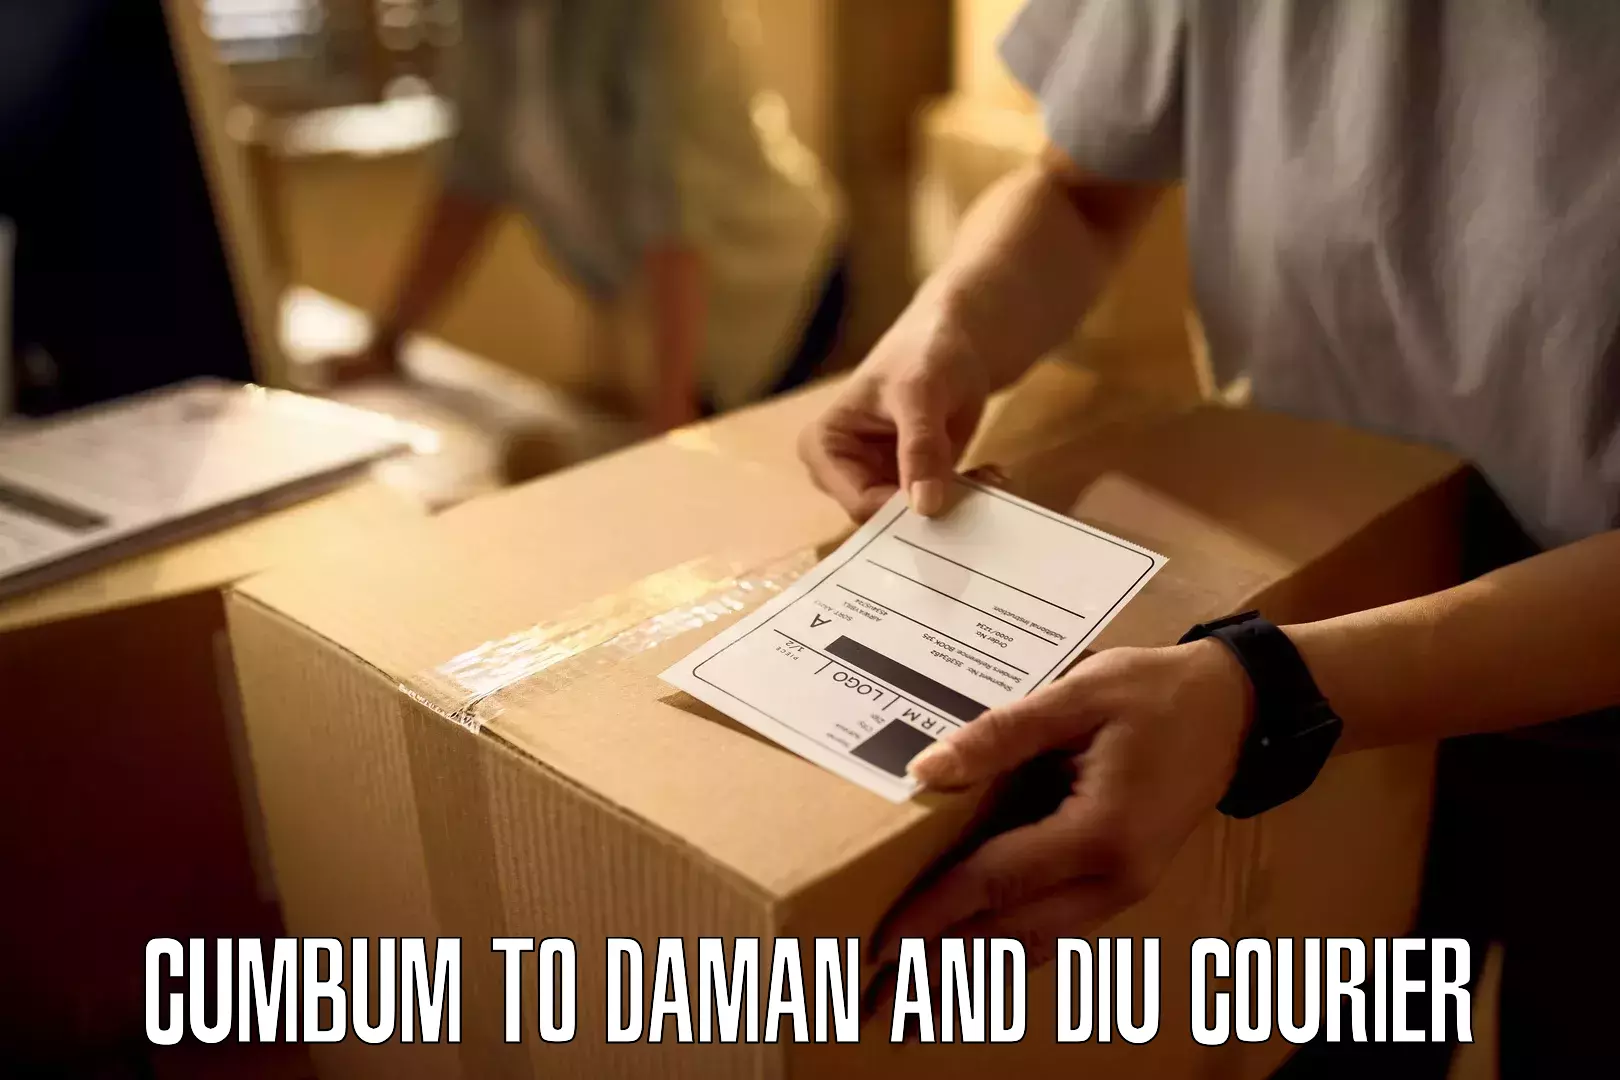 Budget-friendly shipping Cumbum to Daman